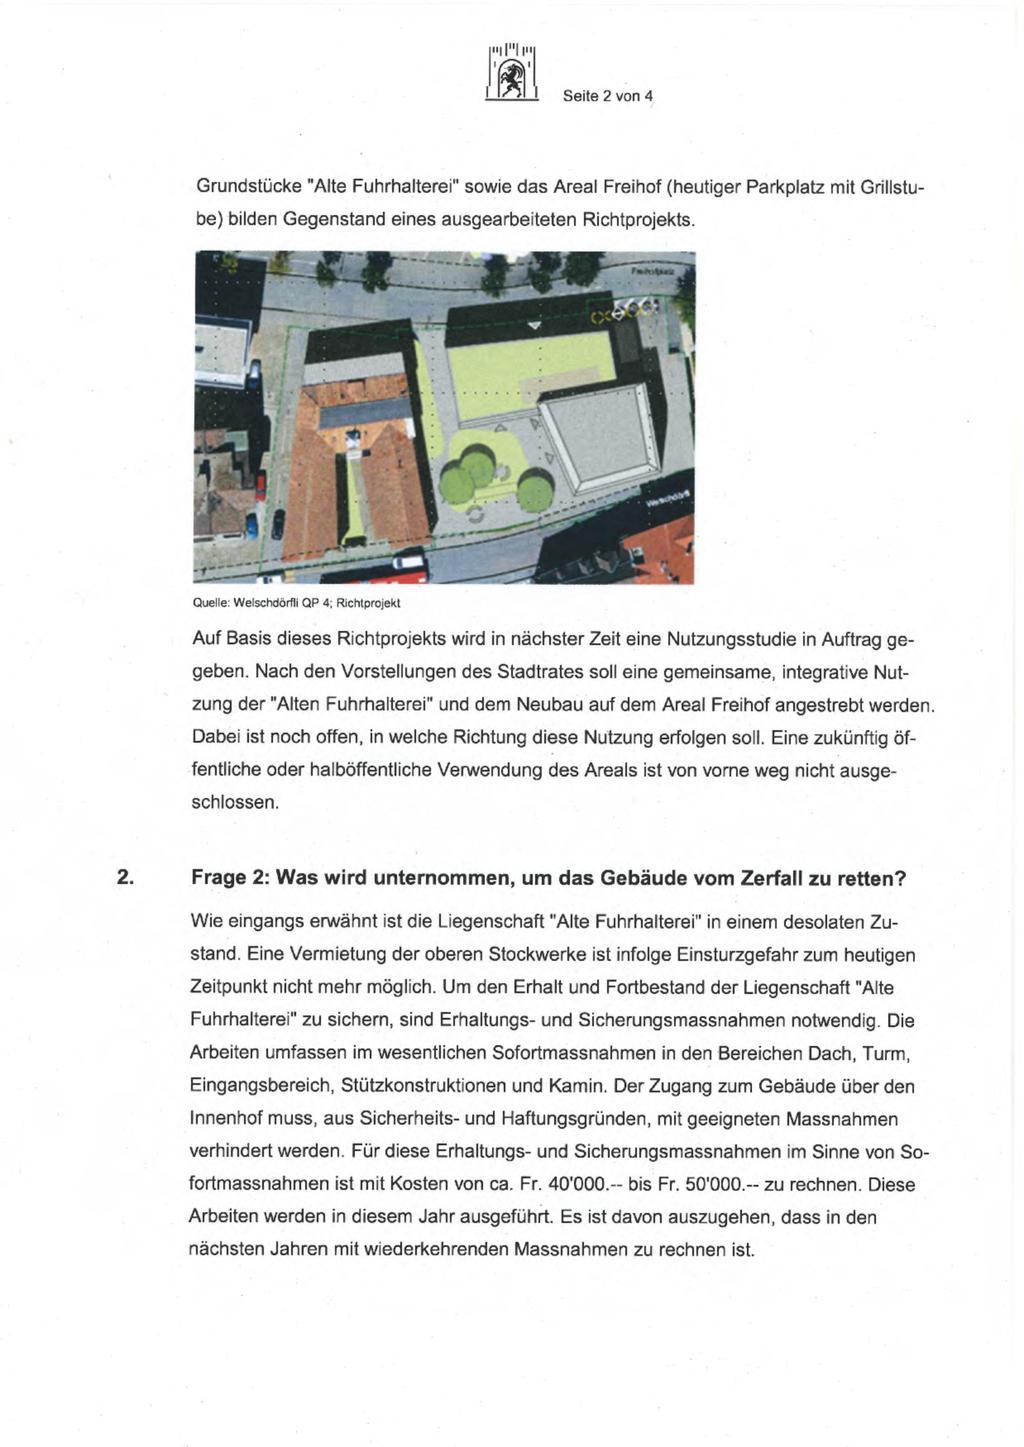 l Ilipq l',~*lili Seite 2 von 4 Grundstücke "Alte Fuhrhalterei" sowie das Areal Freihof (heutiger Parkplatz mit Grillstube) bilden Gegenstand eines ausgearbeiteten Richtprojekts.